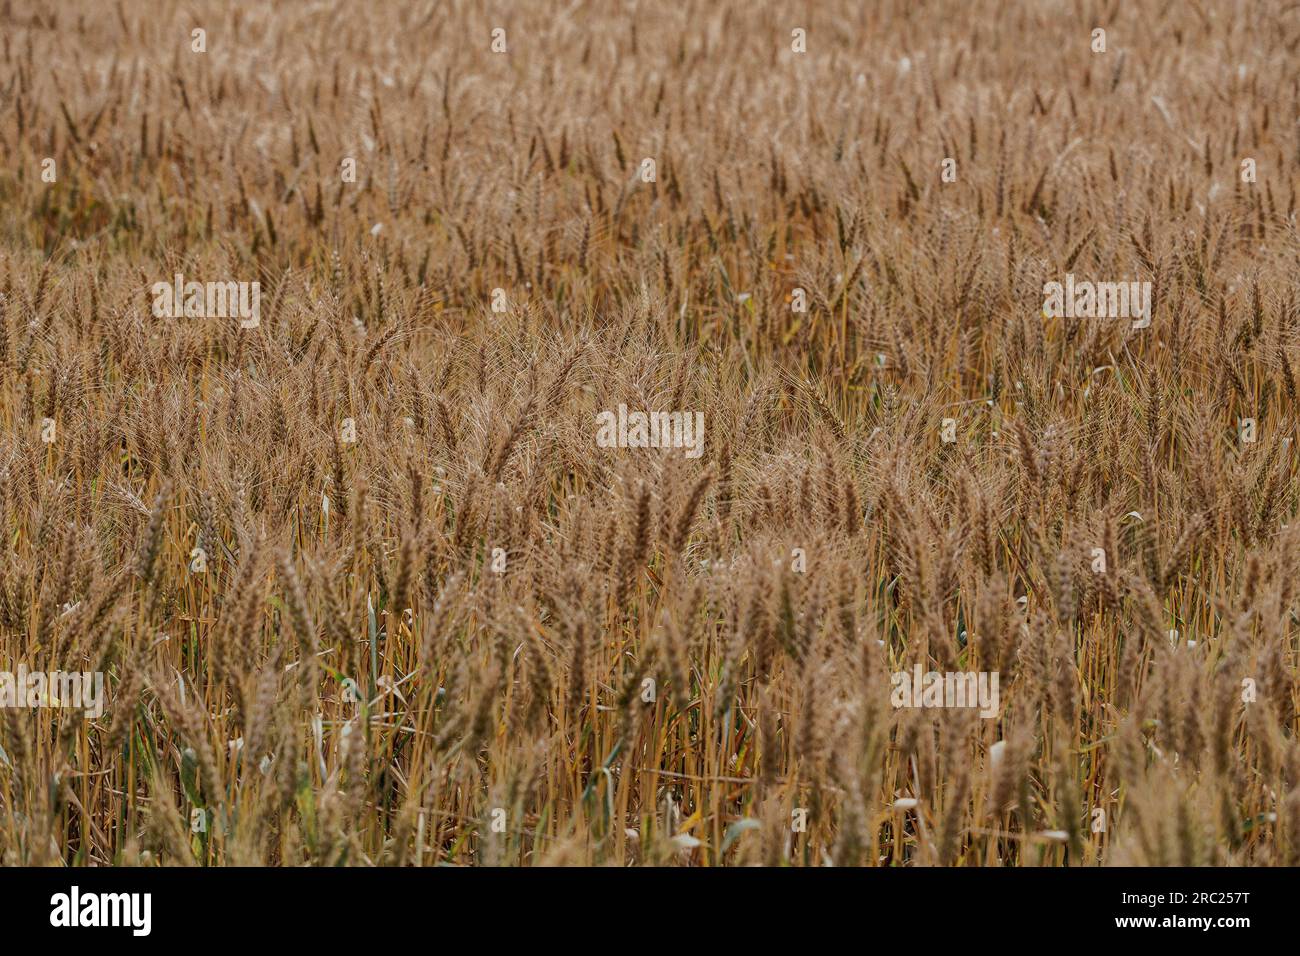 Les champs de blé sont un spectacle à voir, avec leur vaste étendue et leur teinte dorée. À perte de vue, les vagues ondulantes de grain créent un mesmeriz Banque D'Images